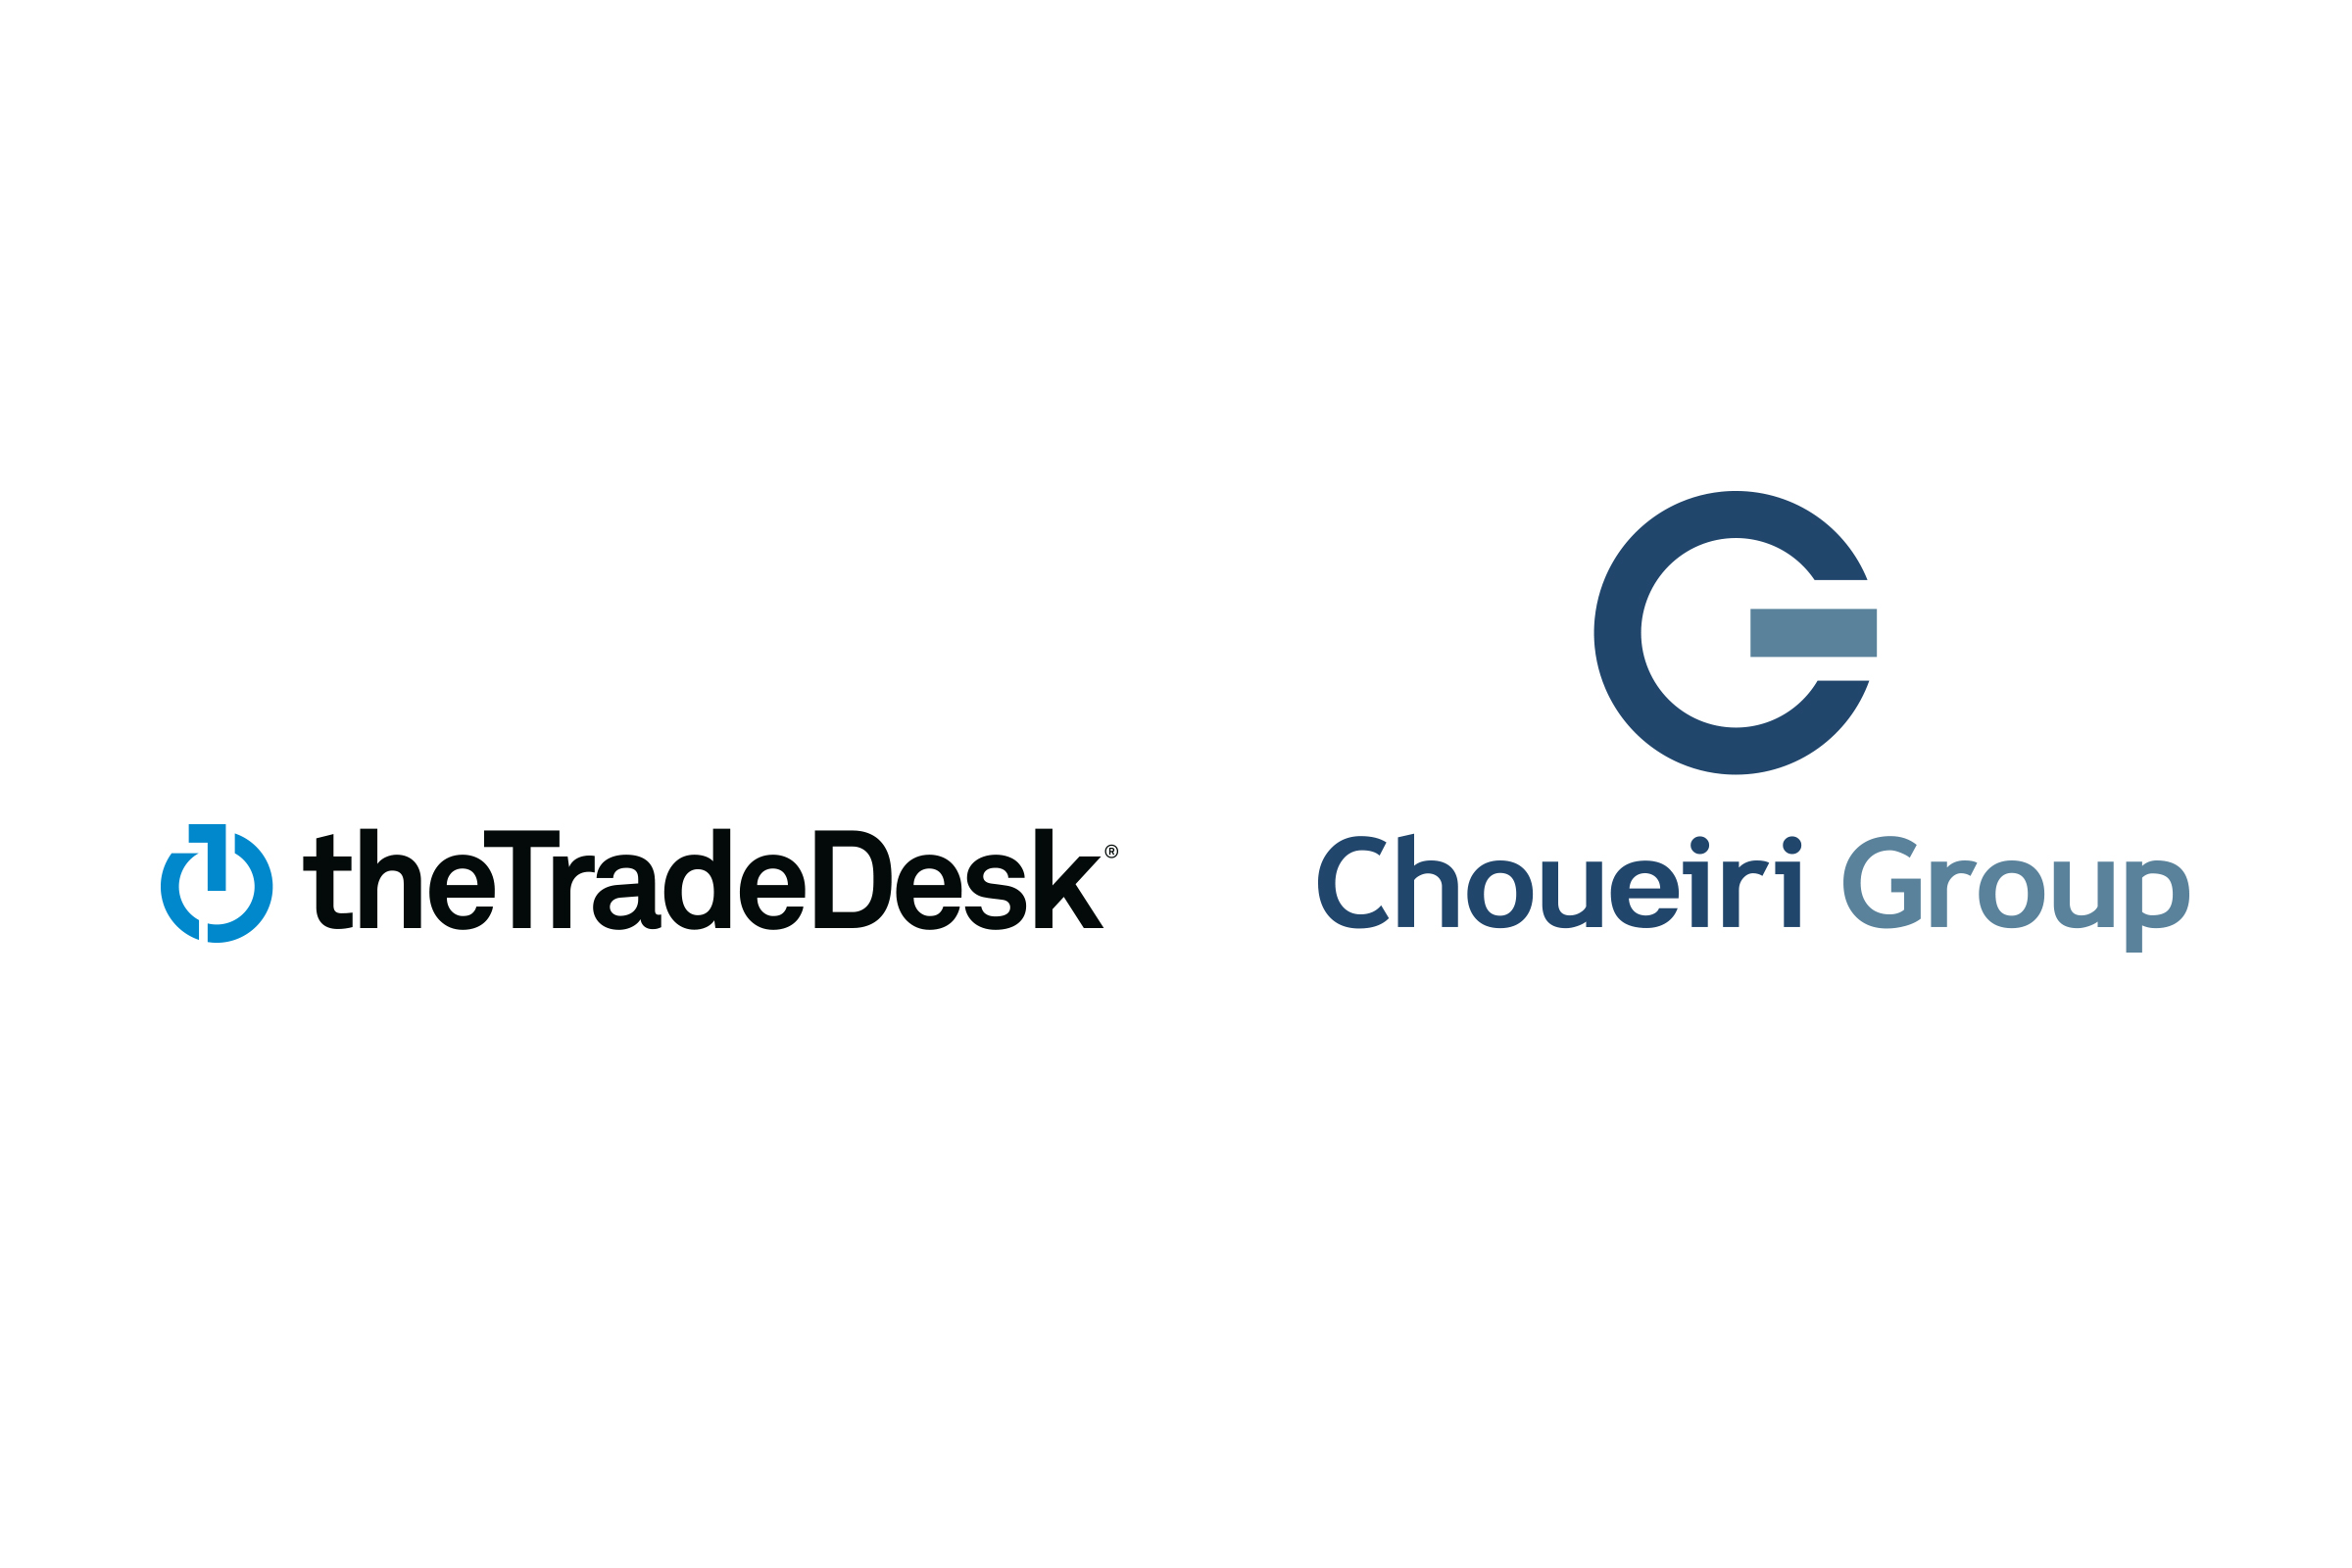 شركة Desk Trade The ومجموعة Group Choueiri تتعاونان لتوفیر وصول منھجي  أفضل للإعلانات في الشرق الأوسط